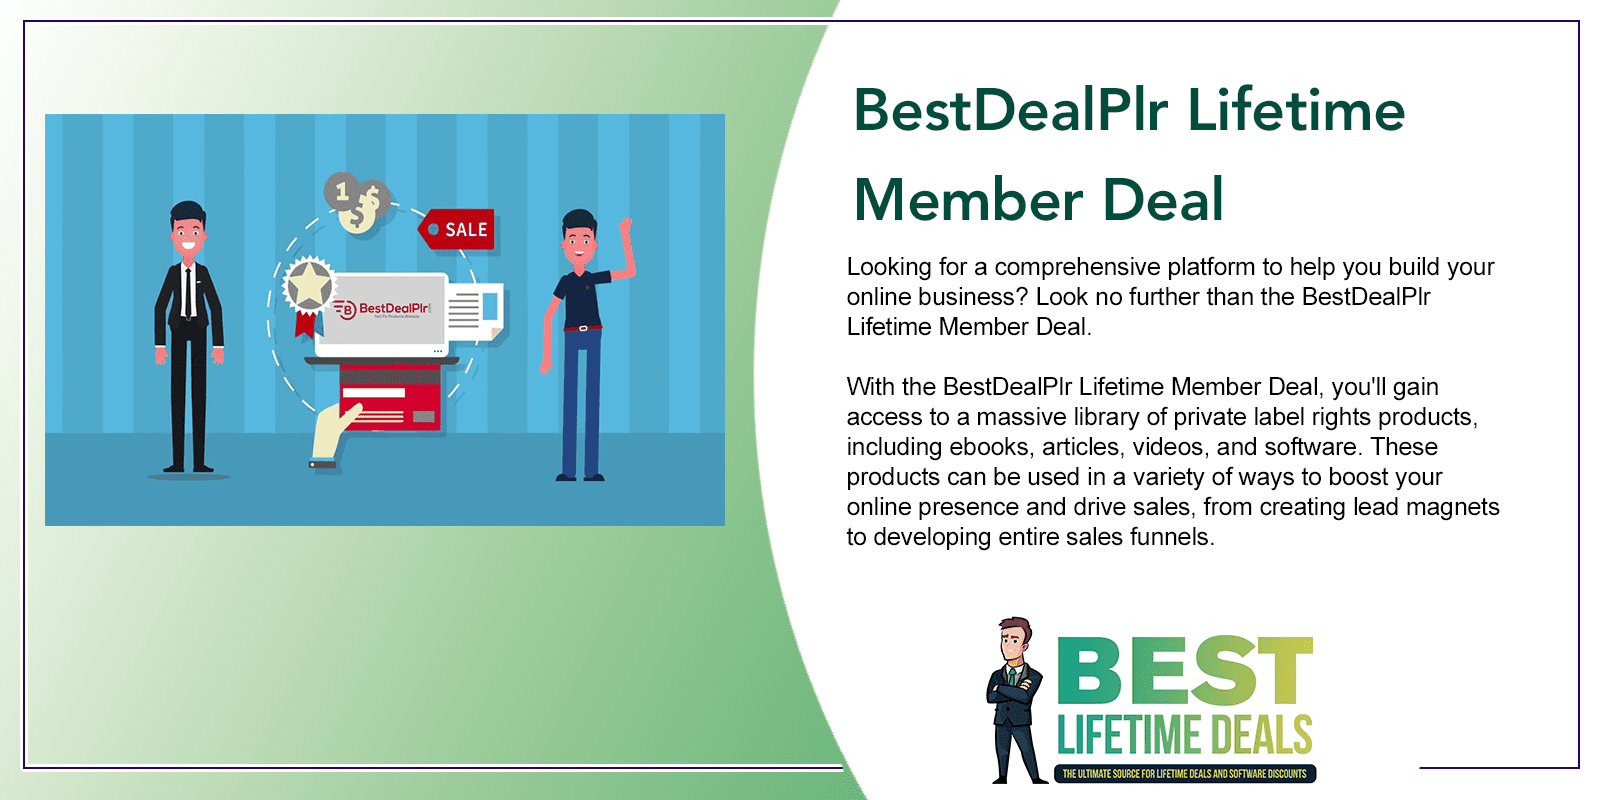 BestDealPlr Lifetime Member Deal Featured Image